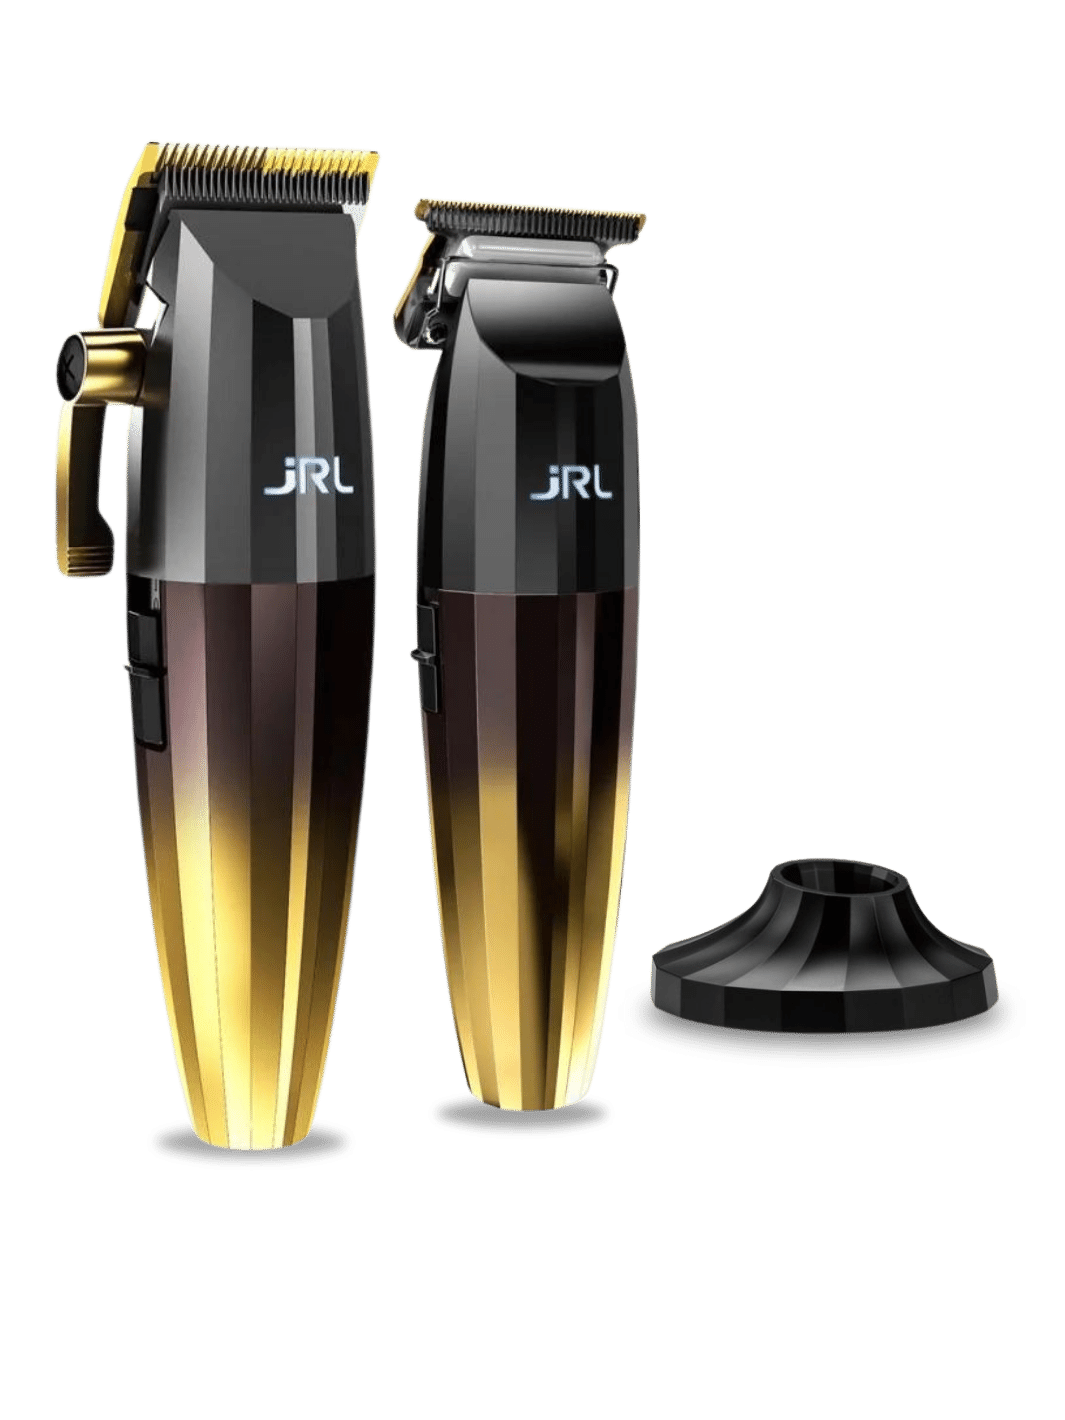 JRL FF2020 Gold Kollektion mit professionellem Haarschneider und Trimmer in elegantem Design, abgebildet, inklusive Halterung.